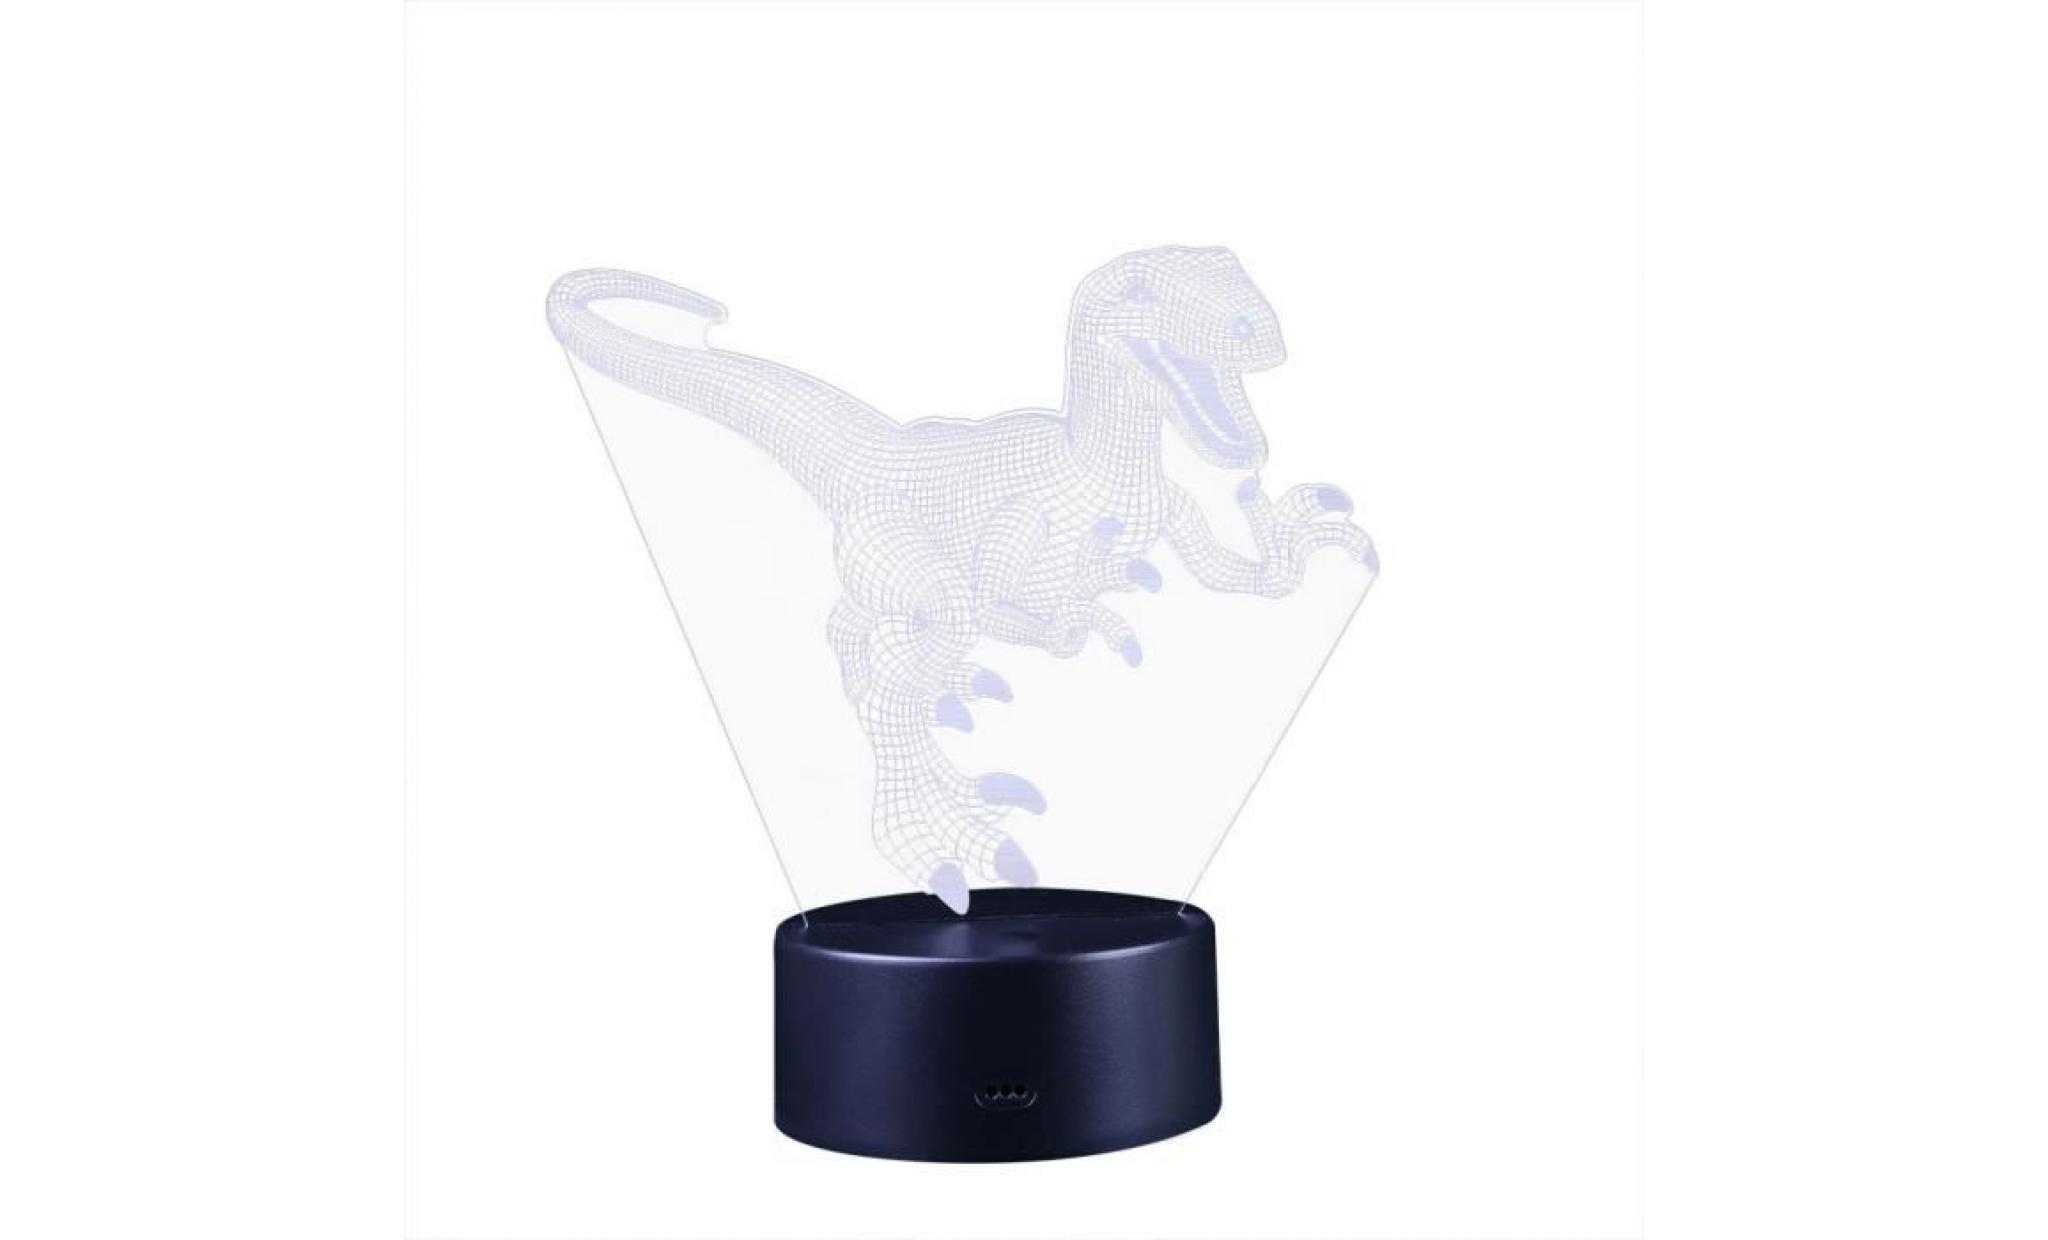 lampe de nuit d'enfants de dinosaure 3d 7 couleurs de led changeant la décoration de bureau de table hmi81218006bk_381 pas cher